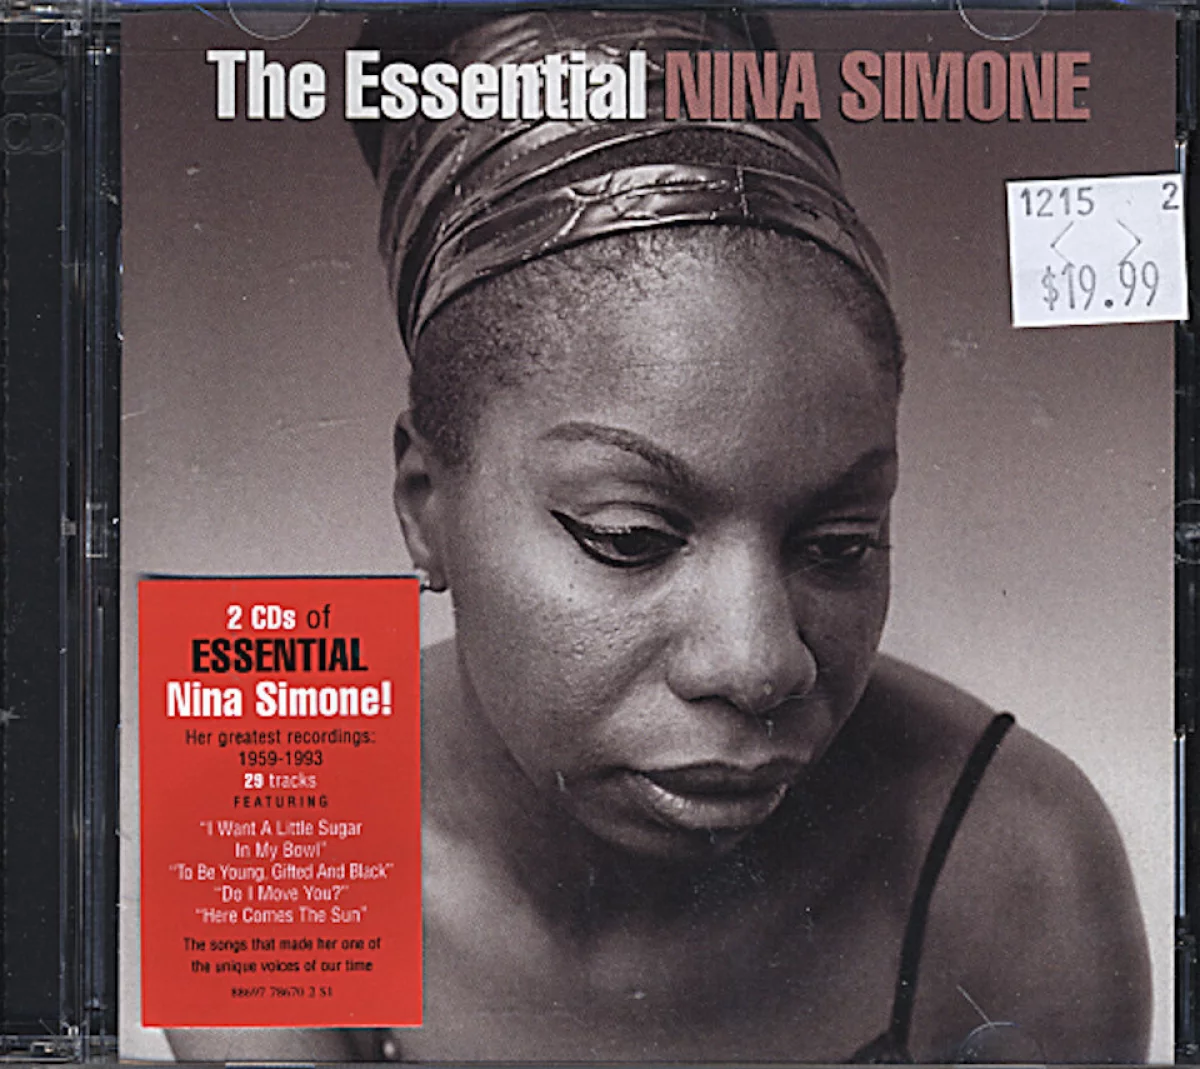 Nina Simone CD, 2011 at Wolfgang's